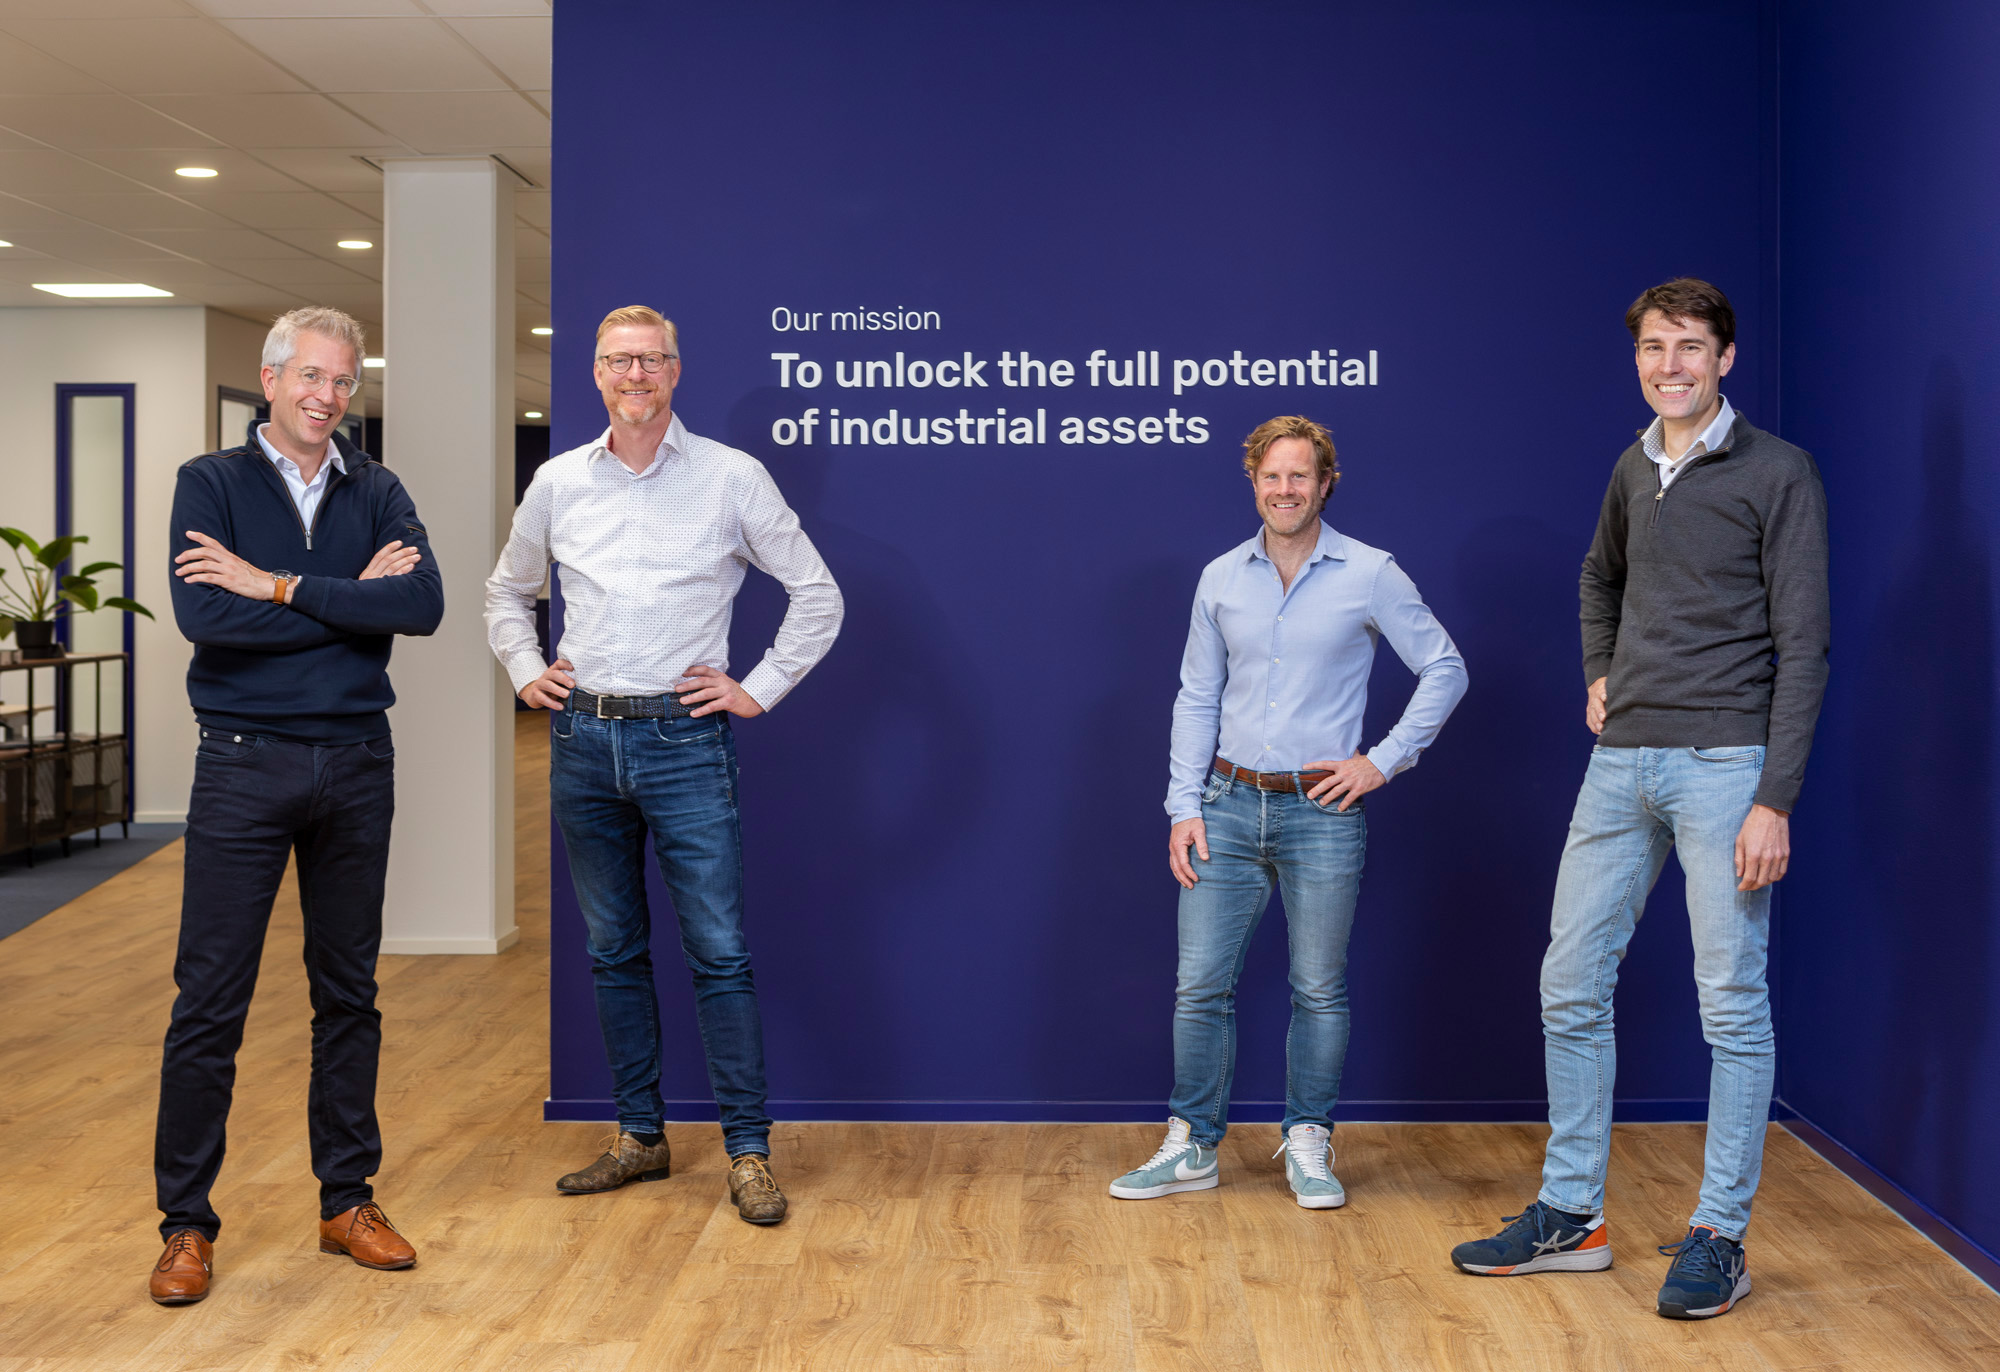 Left to right: Joost Lasschuit (CEO), Arie Rolloos (Sales), Martijn Handels (CTO), Bram Masselink (COO)